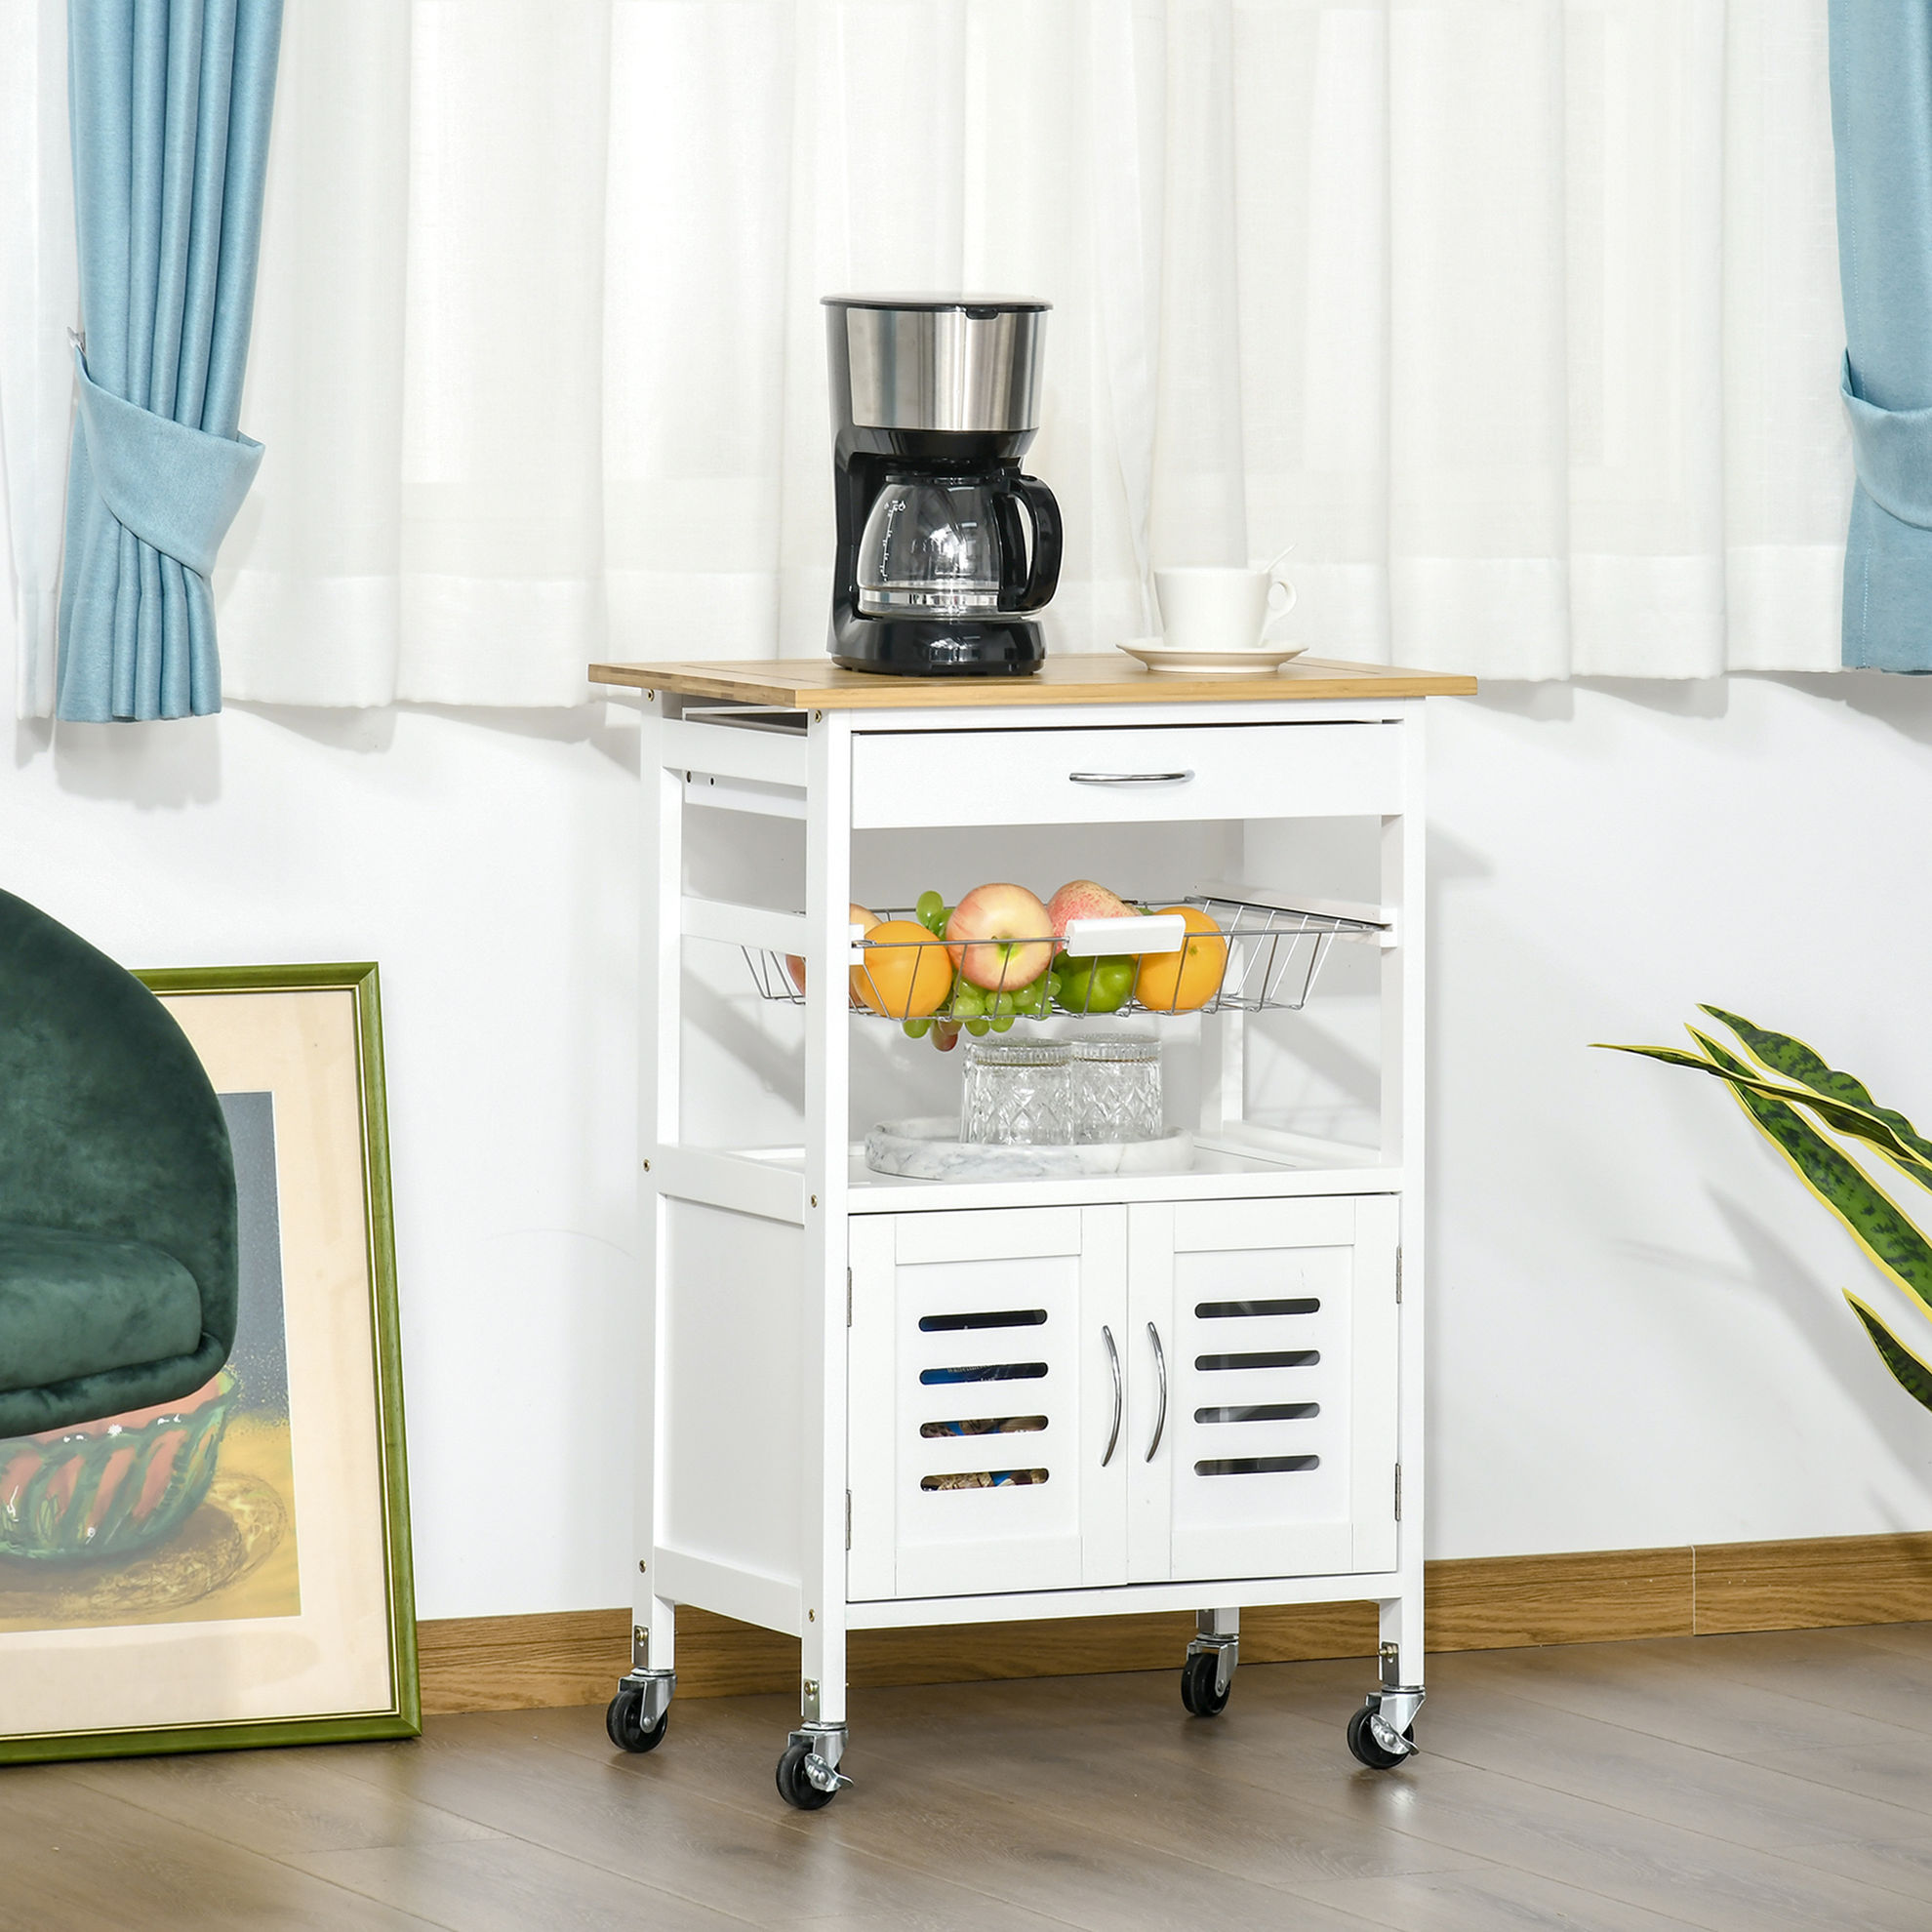 Küchenwagen mit ausziehbarem Korb und einer Schublade | Weltbild.de